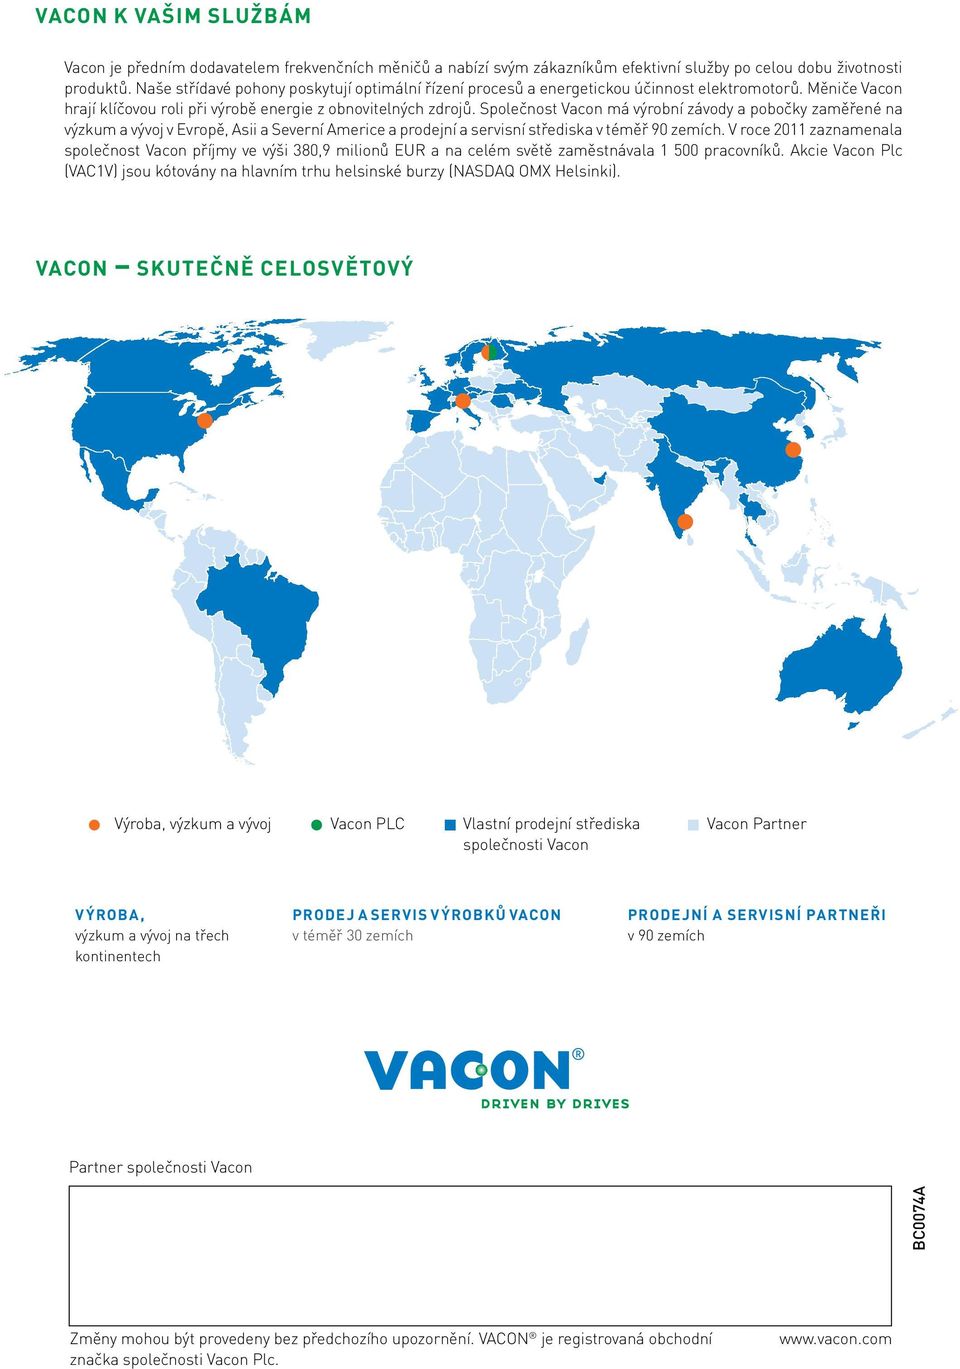 Společnost Vacon má výrobní závody a pobočky zaměřené na výzkum a vývoj v Evropě, Asii a Severní Americe a prodejní a servisní střediska v téměř 90 zemích.